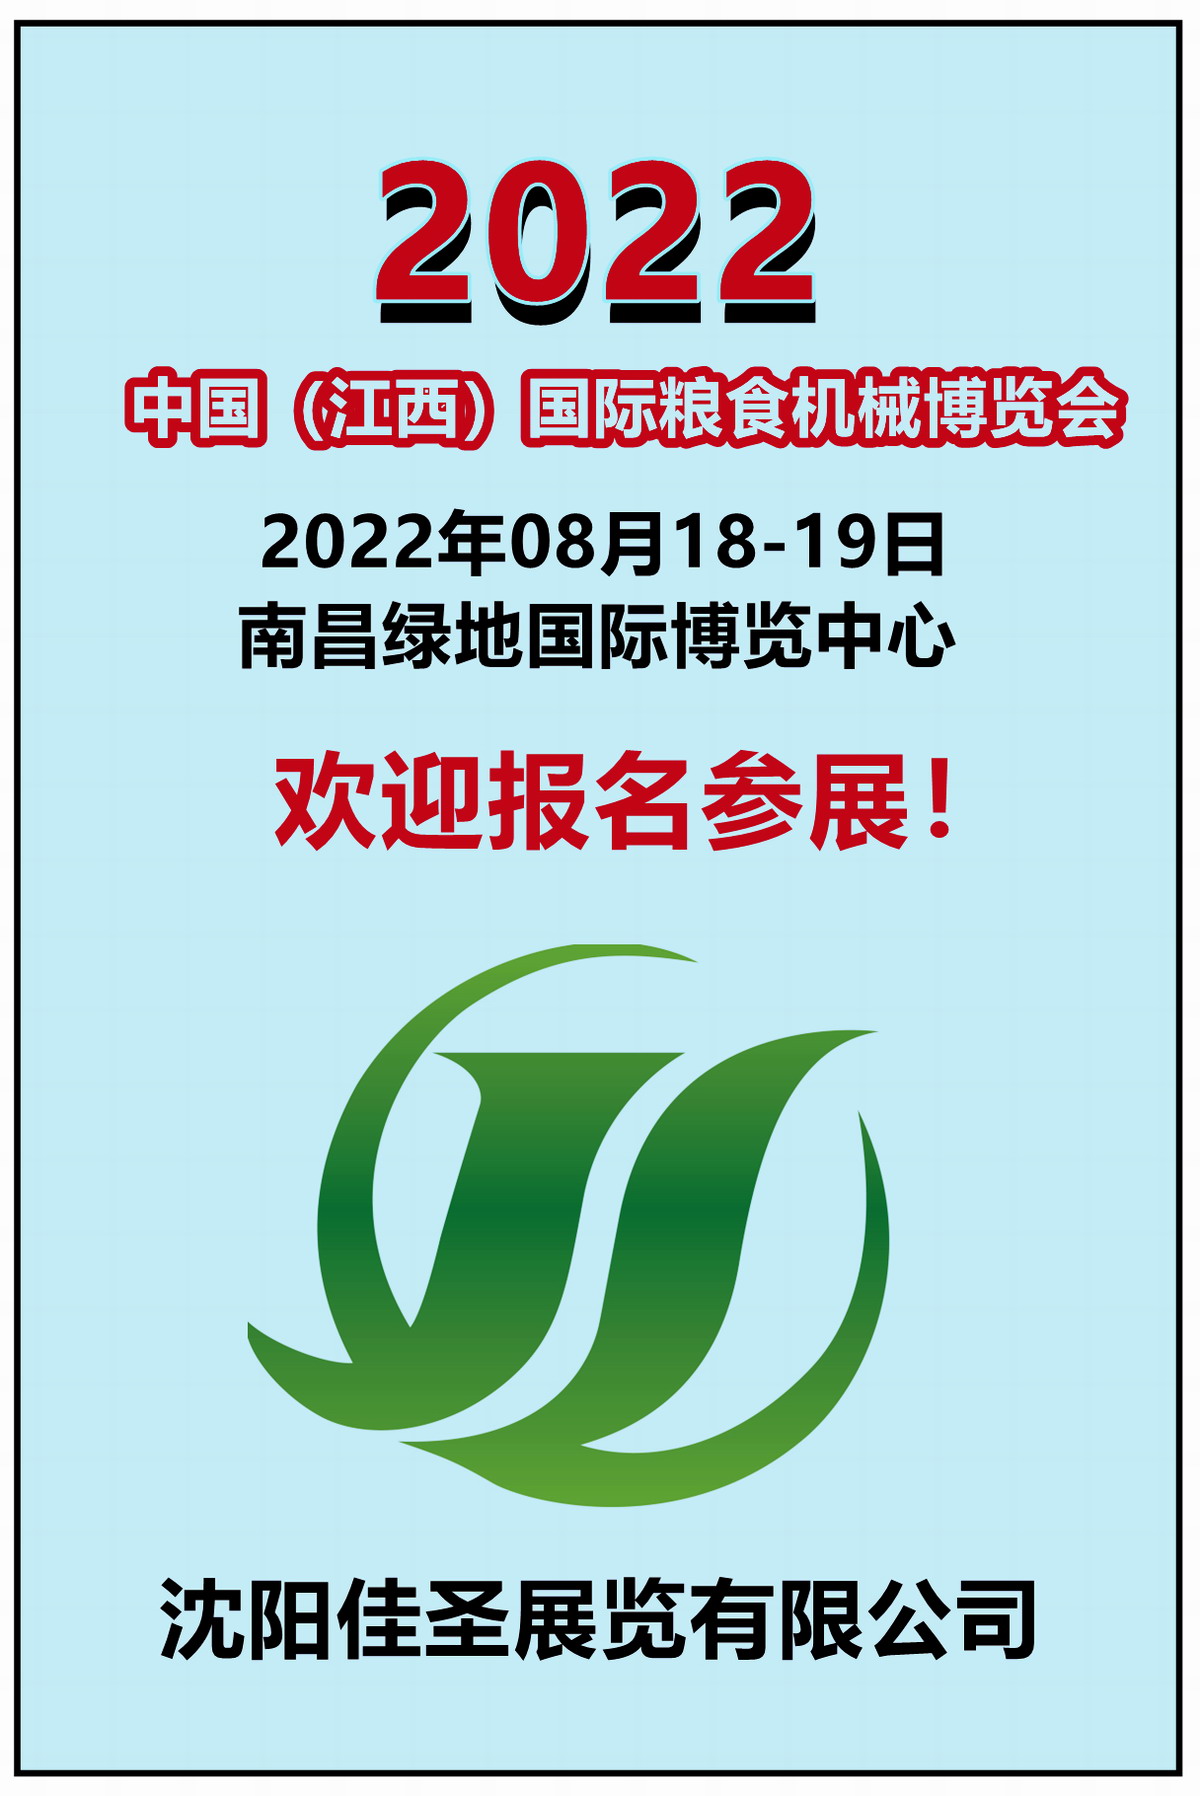 2022中国（江西）国际粮食机械博览会,欢迎您报名参展， 联系手机：15313206870 ！